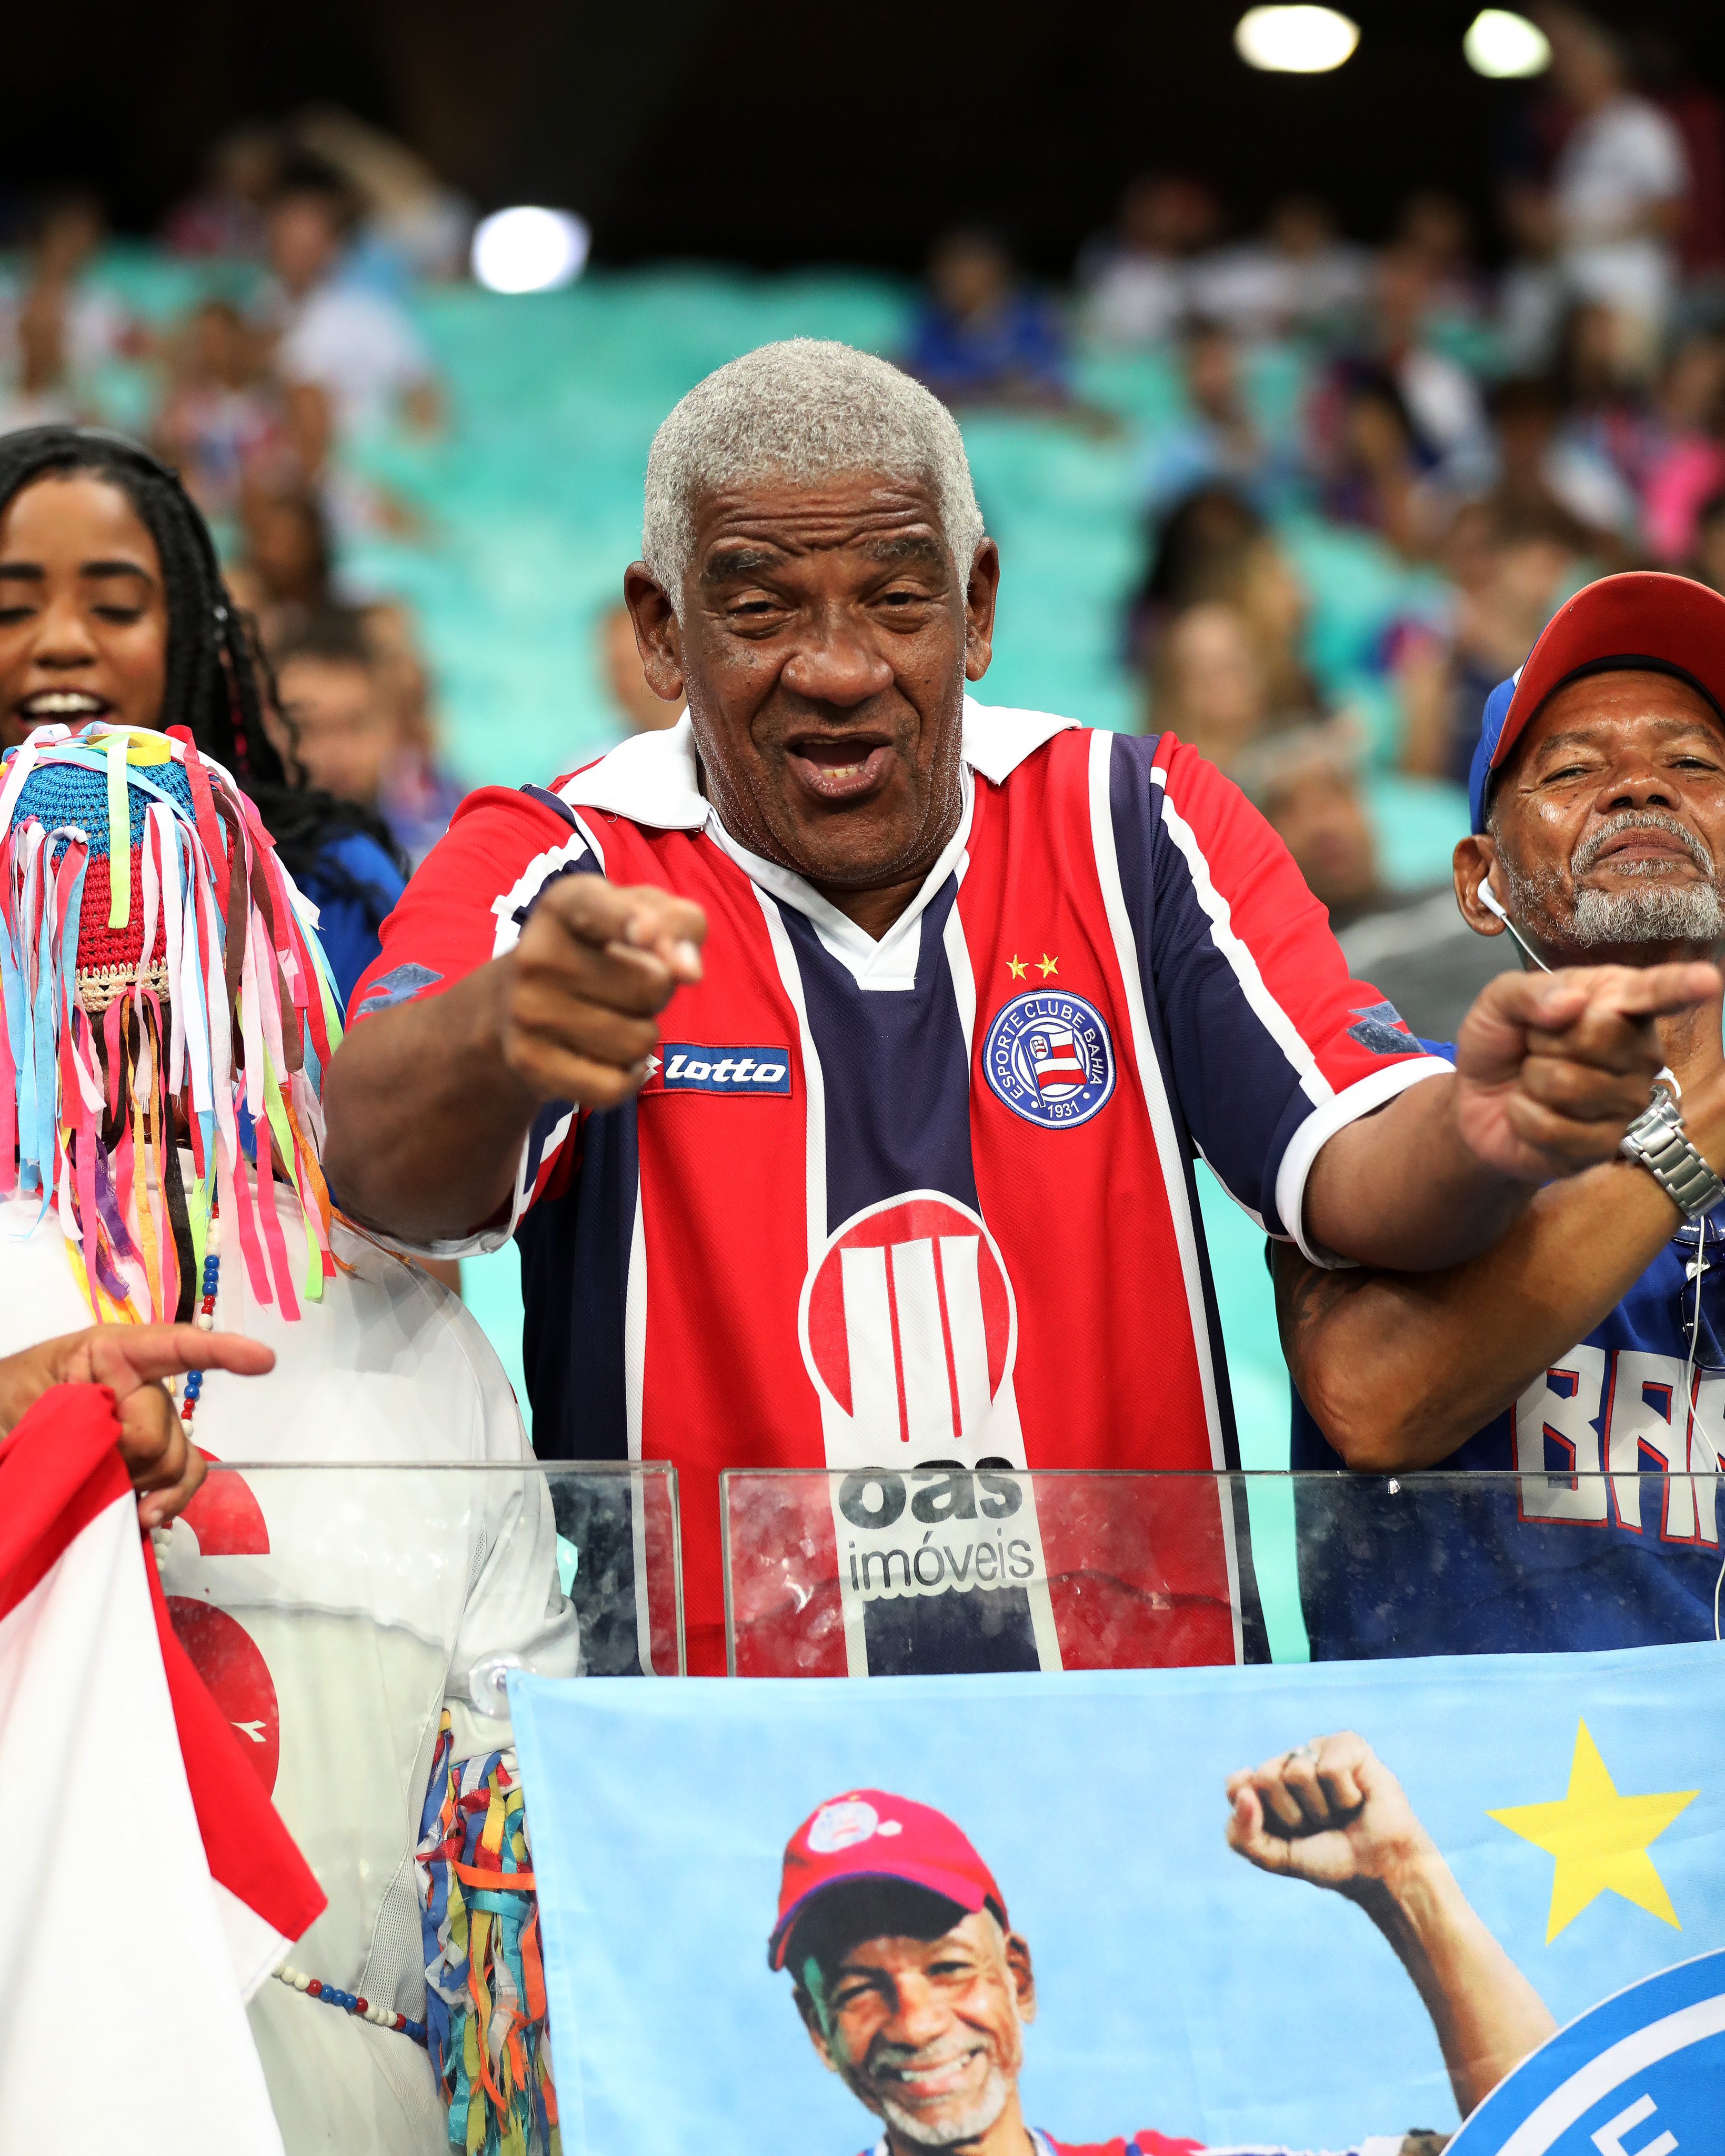 Esporte Clube Bahia on X: 🤲🏼 Alô, Nação! A família da tricolor Lola  agradece quem puder ajudar #BahiaClubeSolidário  / X